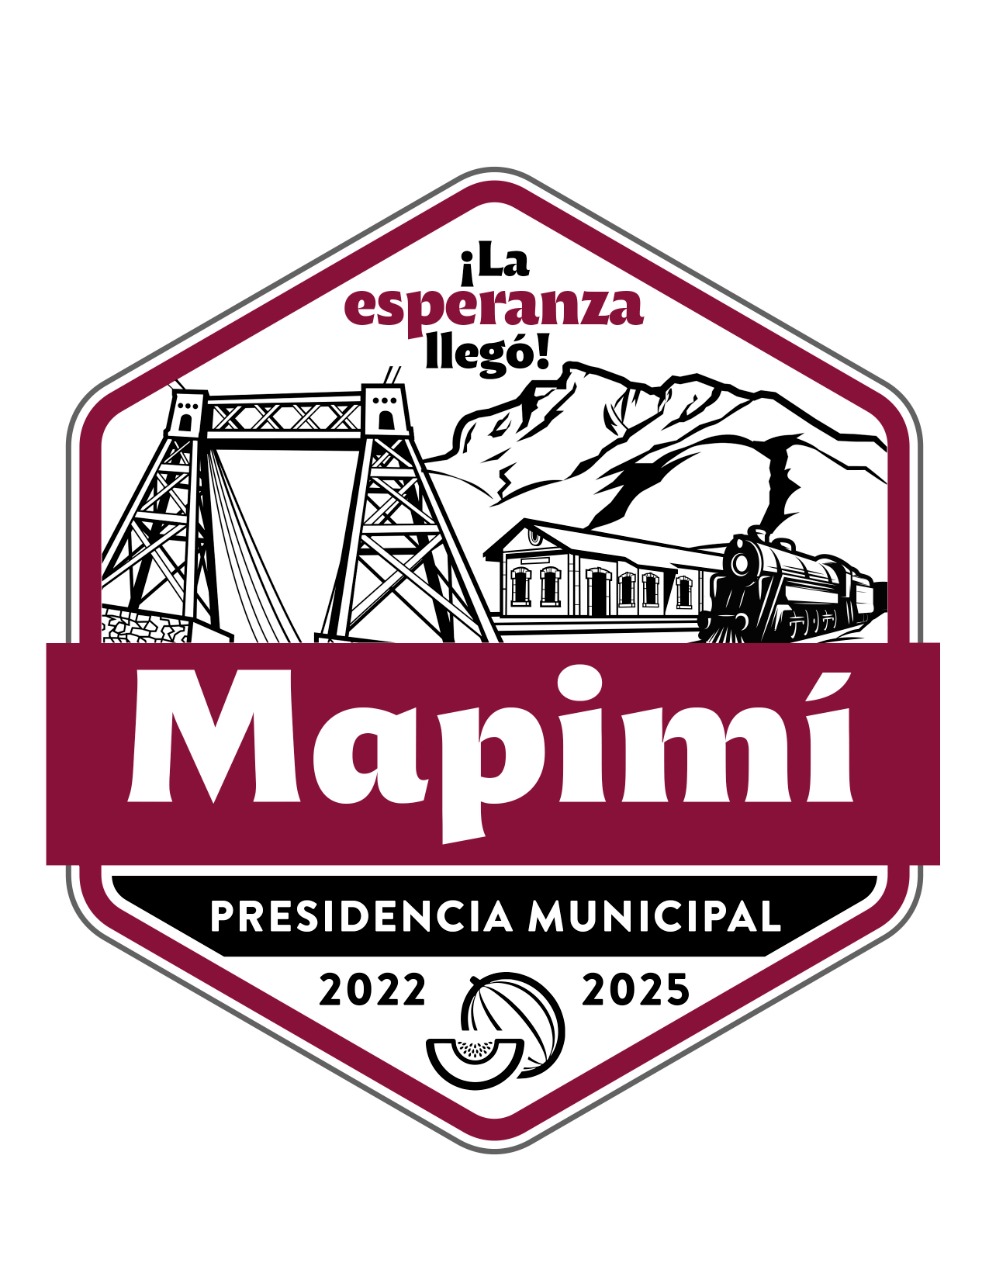 Logo MApimí